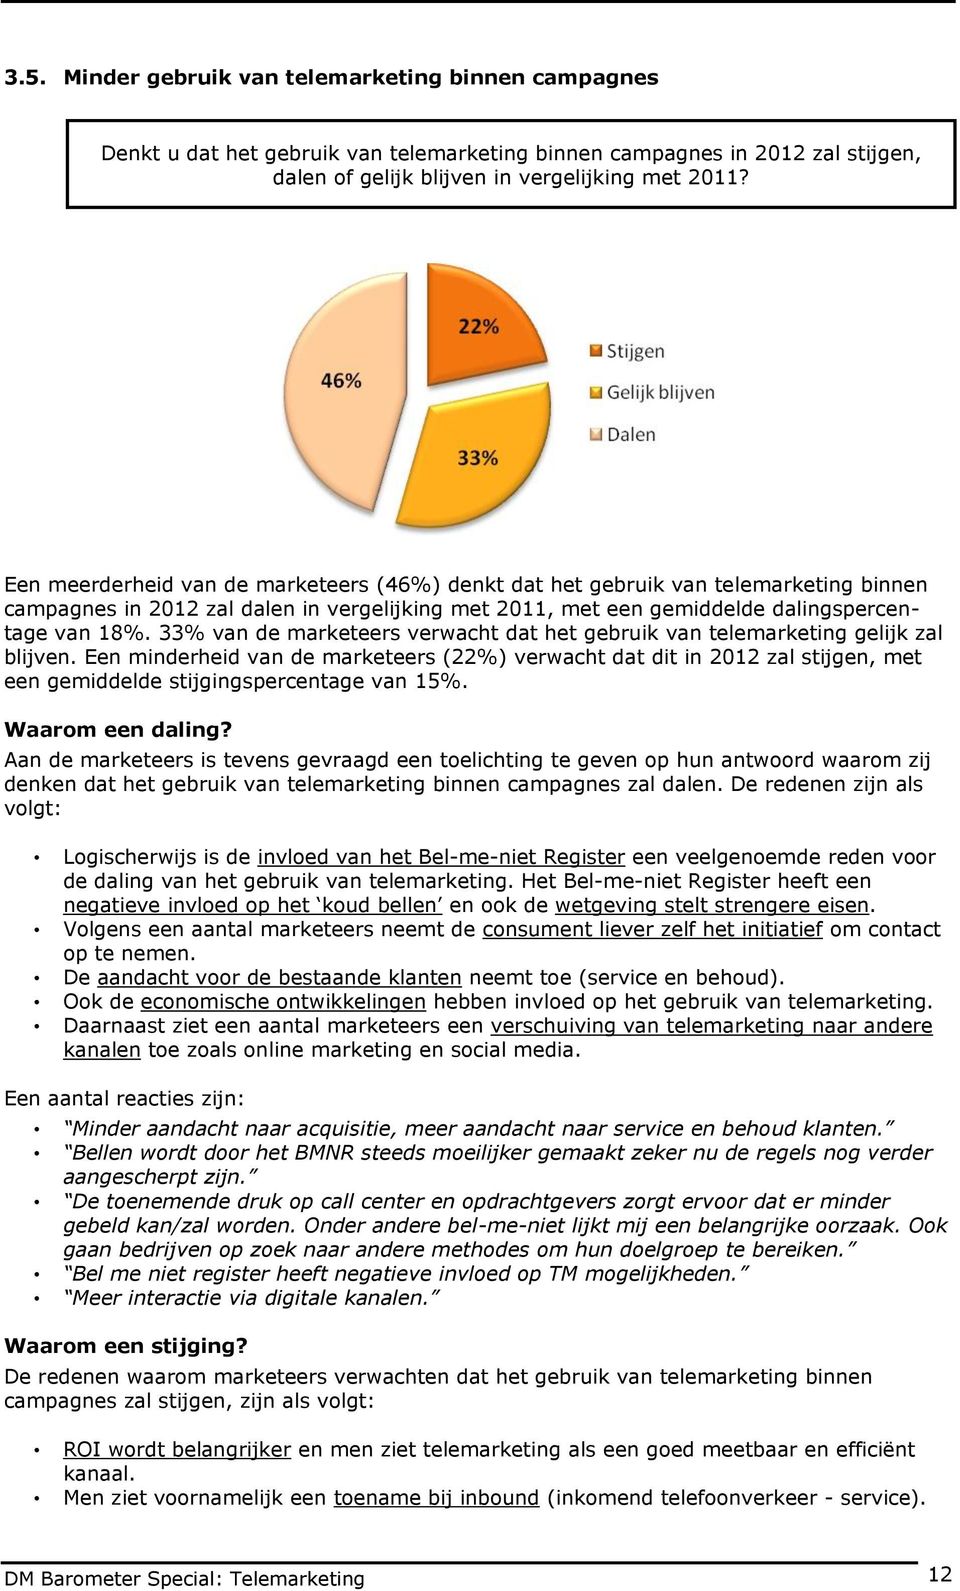 33% van de marketeers verwacht dat het gebruik van telemarketing gelijk zal blijven.